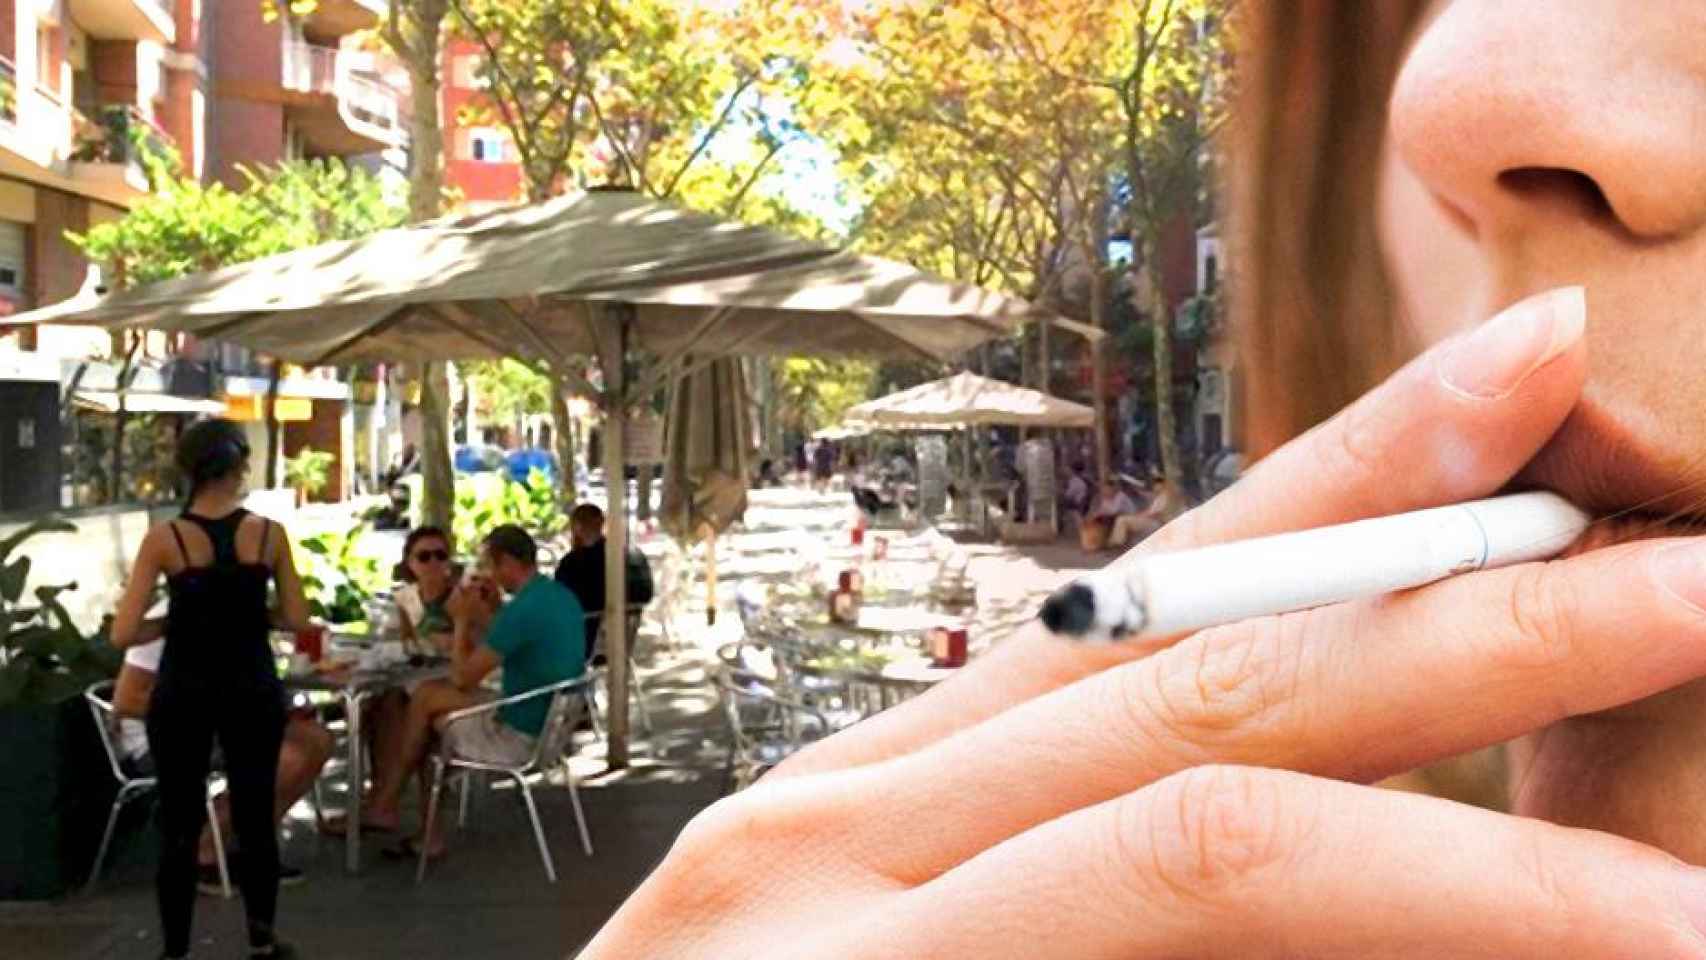 Restauradores rechazan que se prohiba fumar en las terrazas / CG